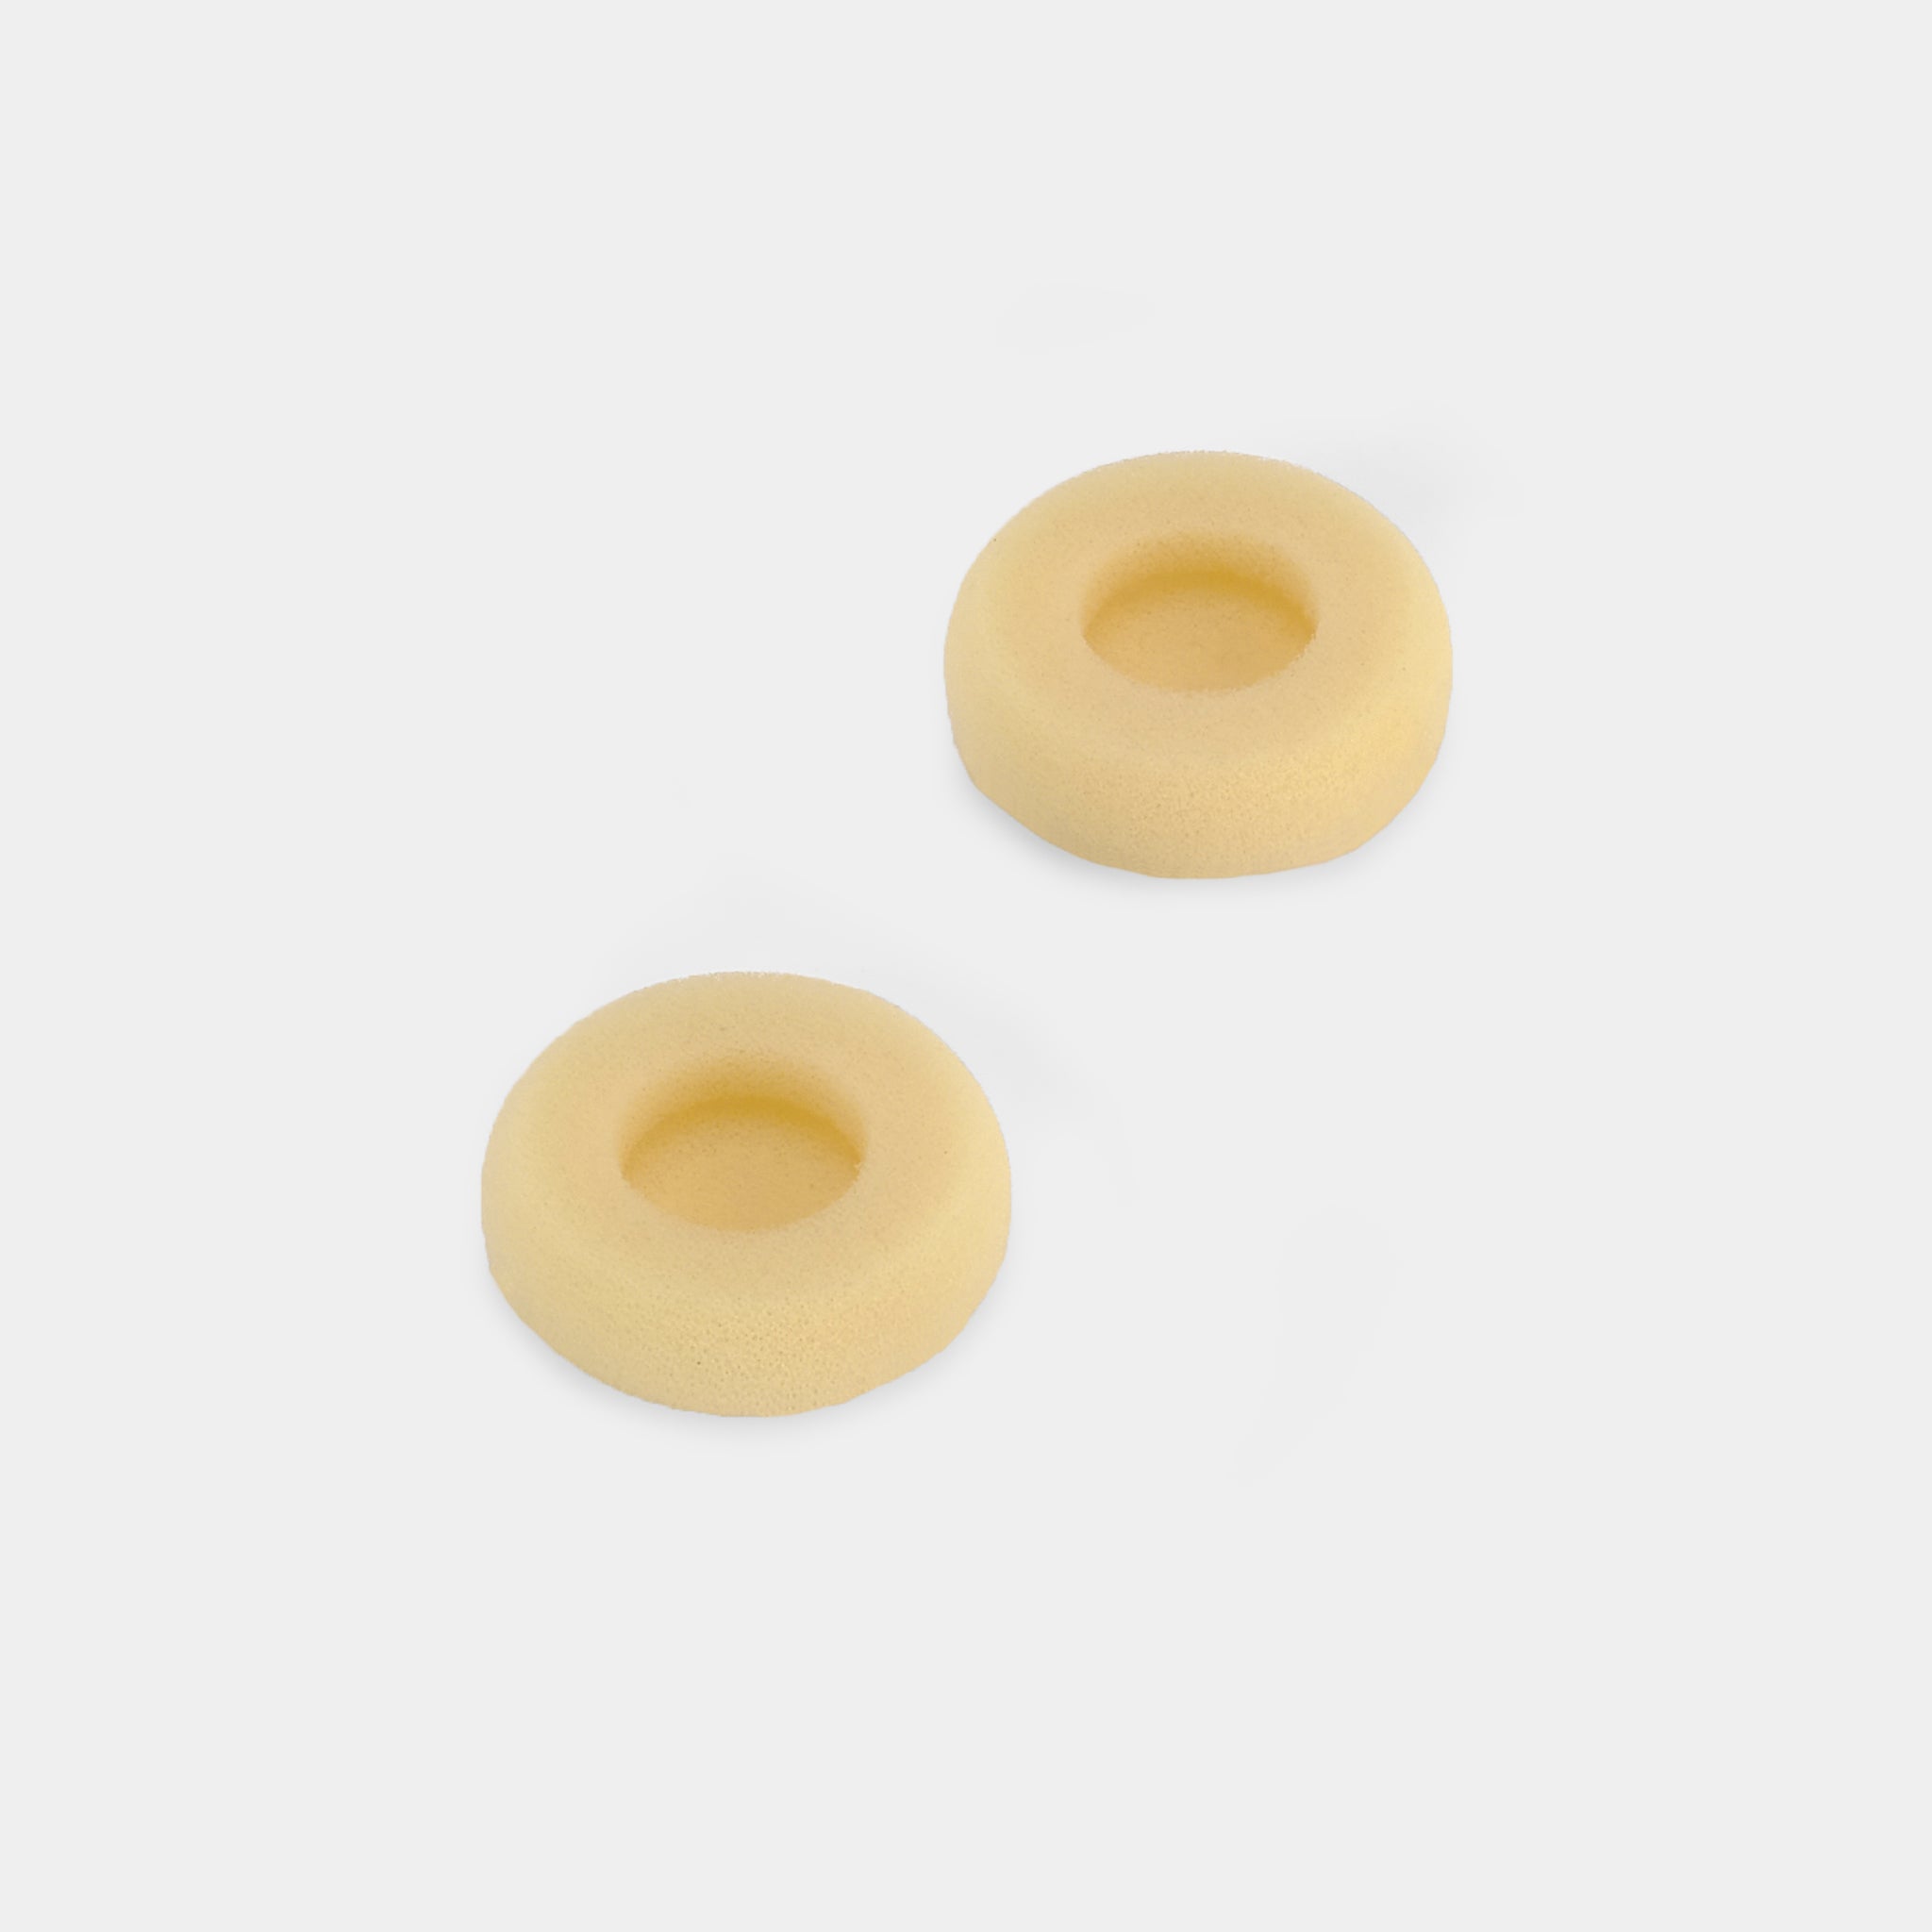 Replacement Foam Pad Cushions for Headphones - 1.5" Diameter